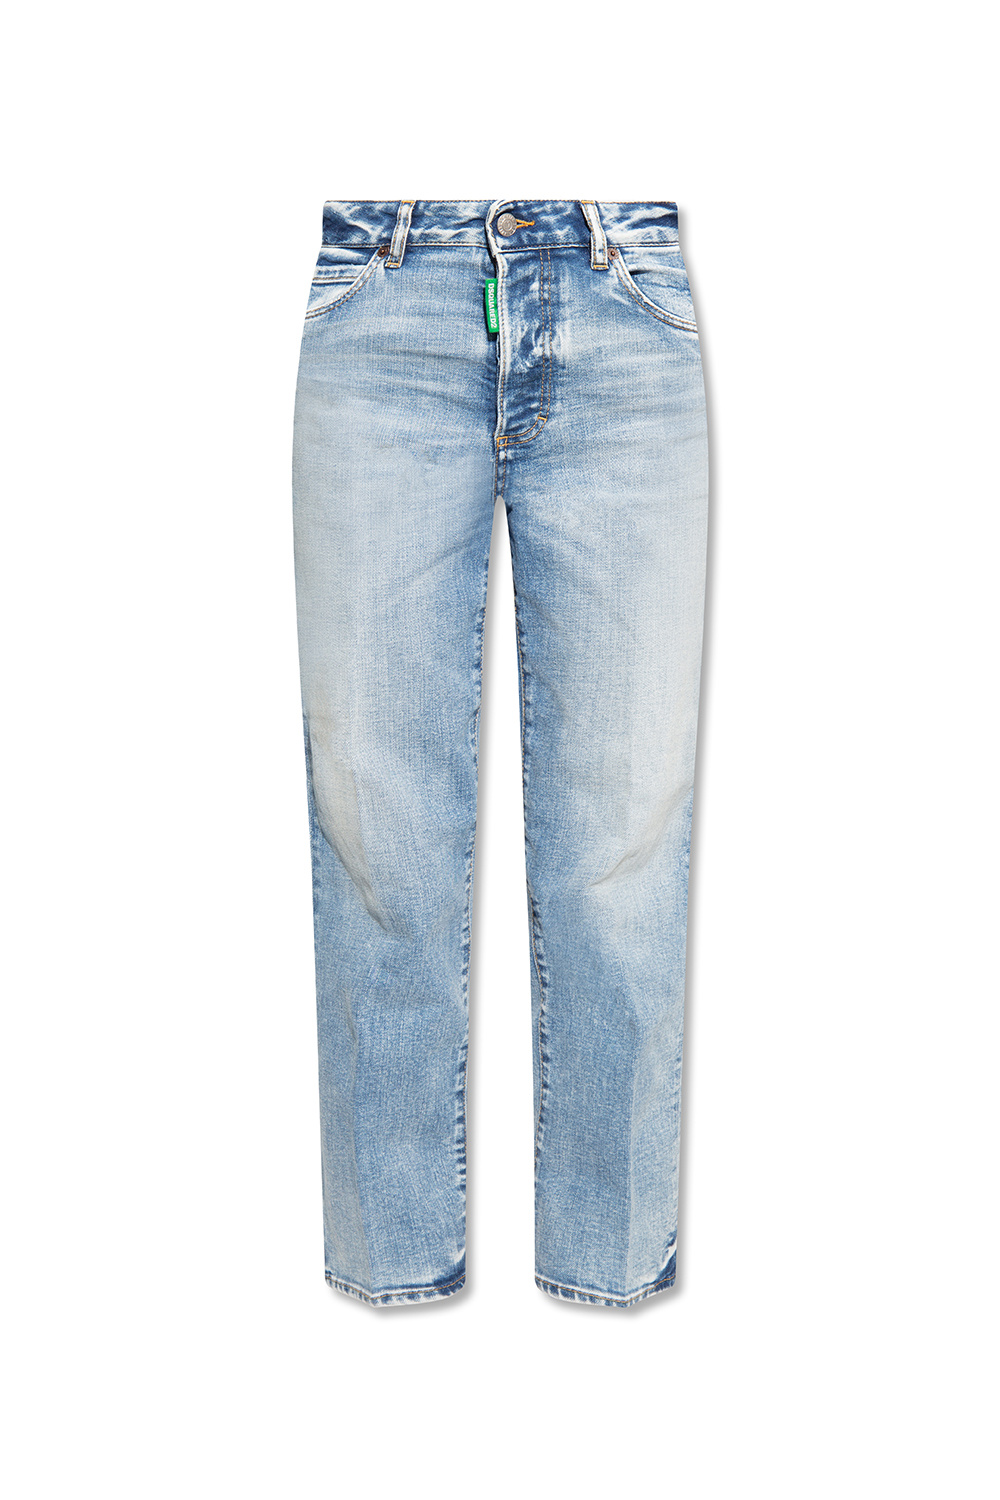 Dsquared2 Boston’ jeans | Women's Clothing | Vitkac